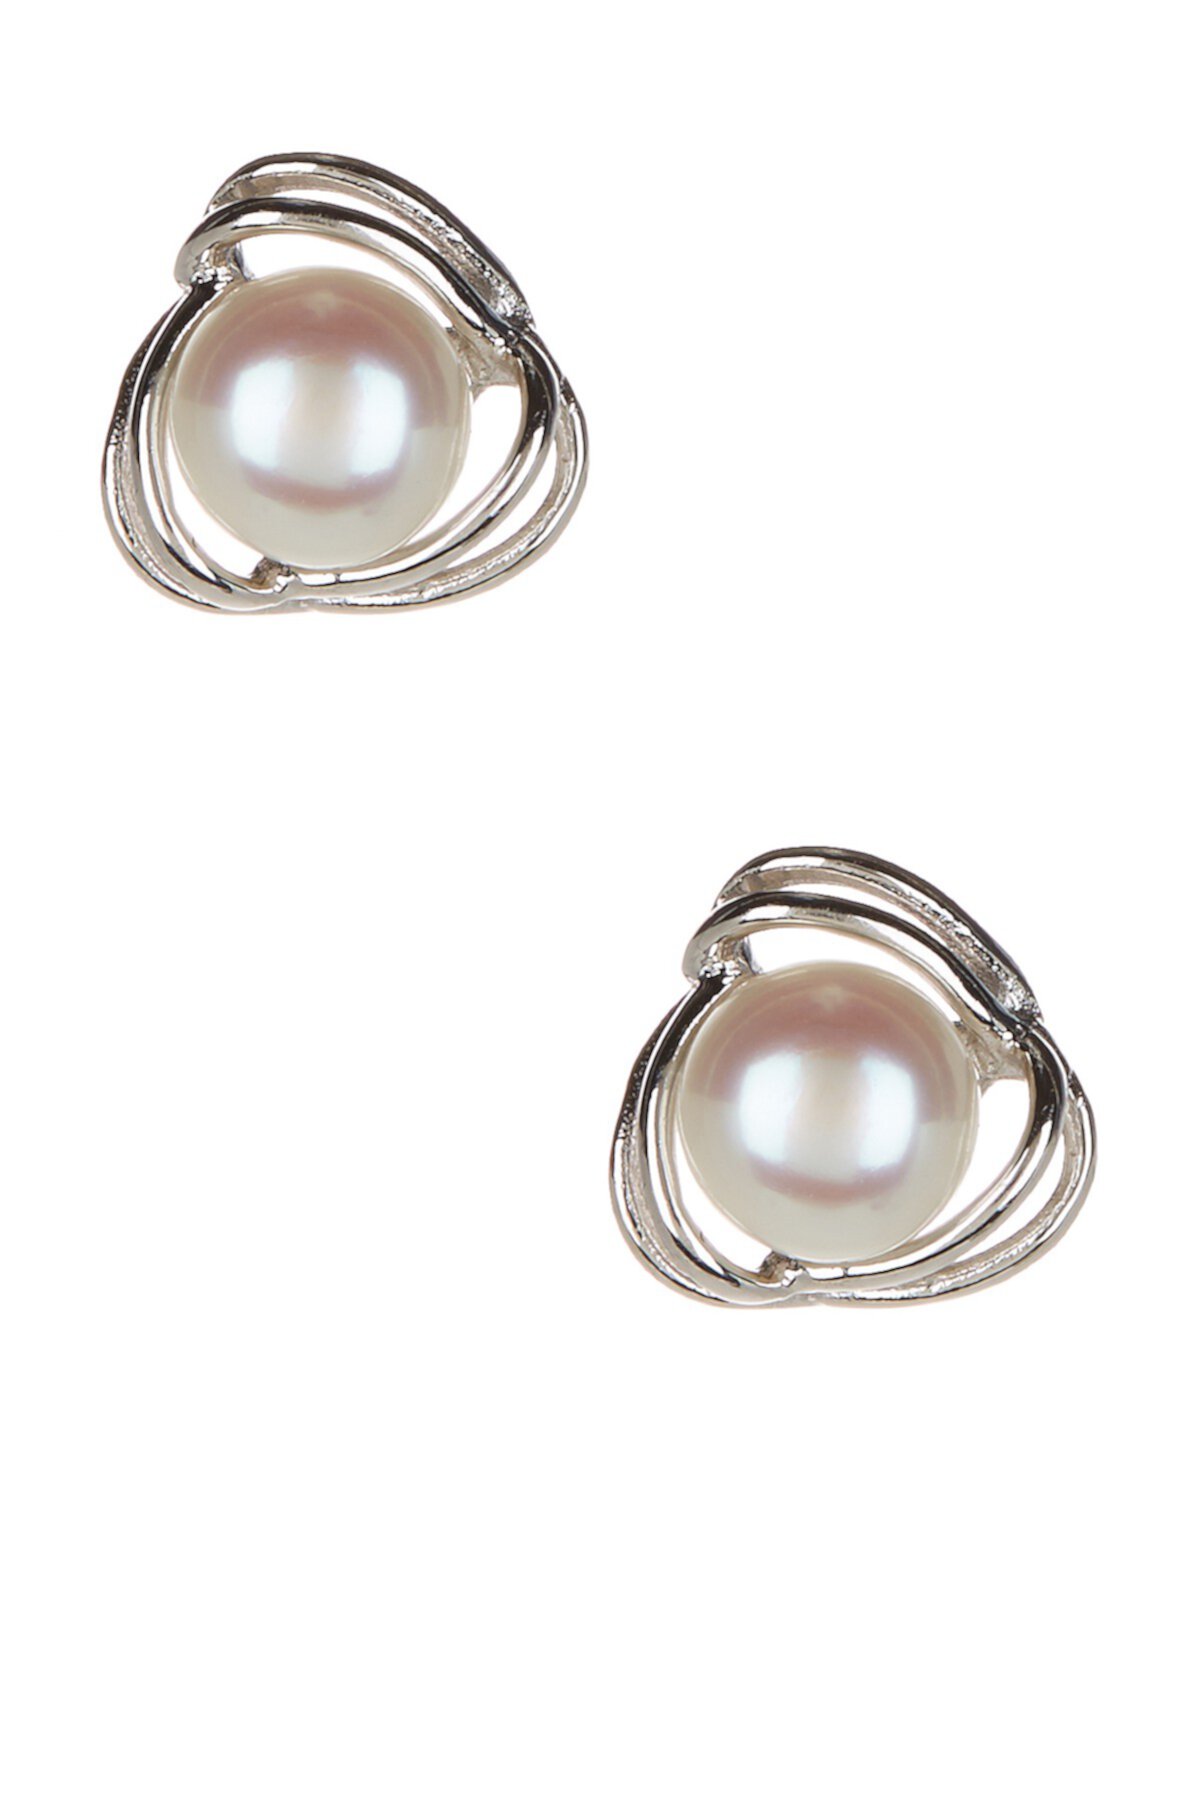 6-7mm Cultured Freshwater Pearl Earrings Splendid Pearls